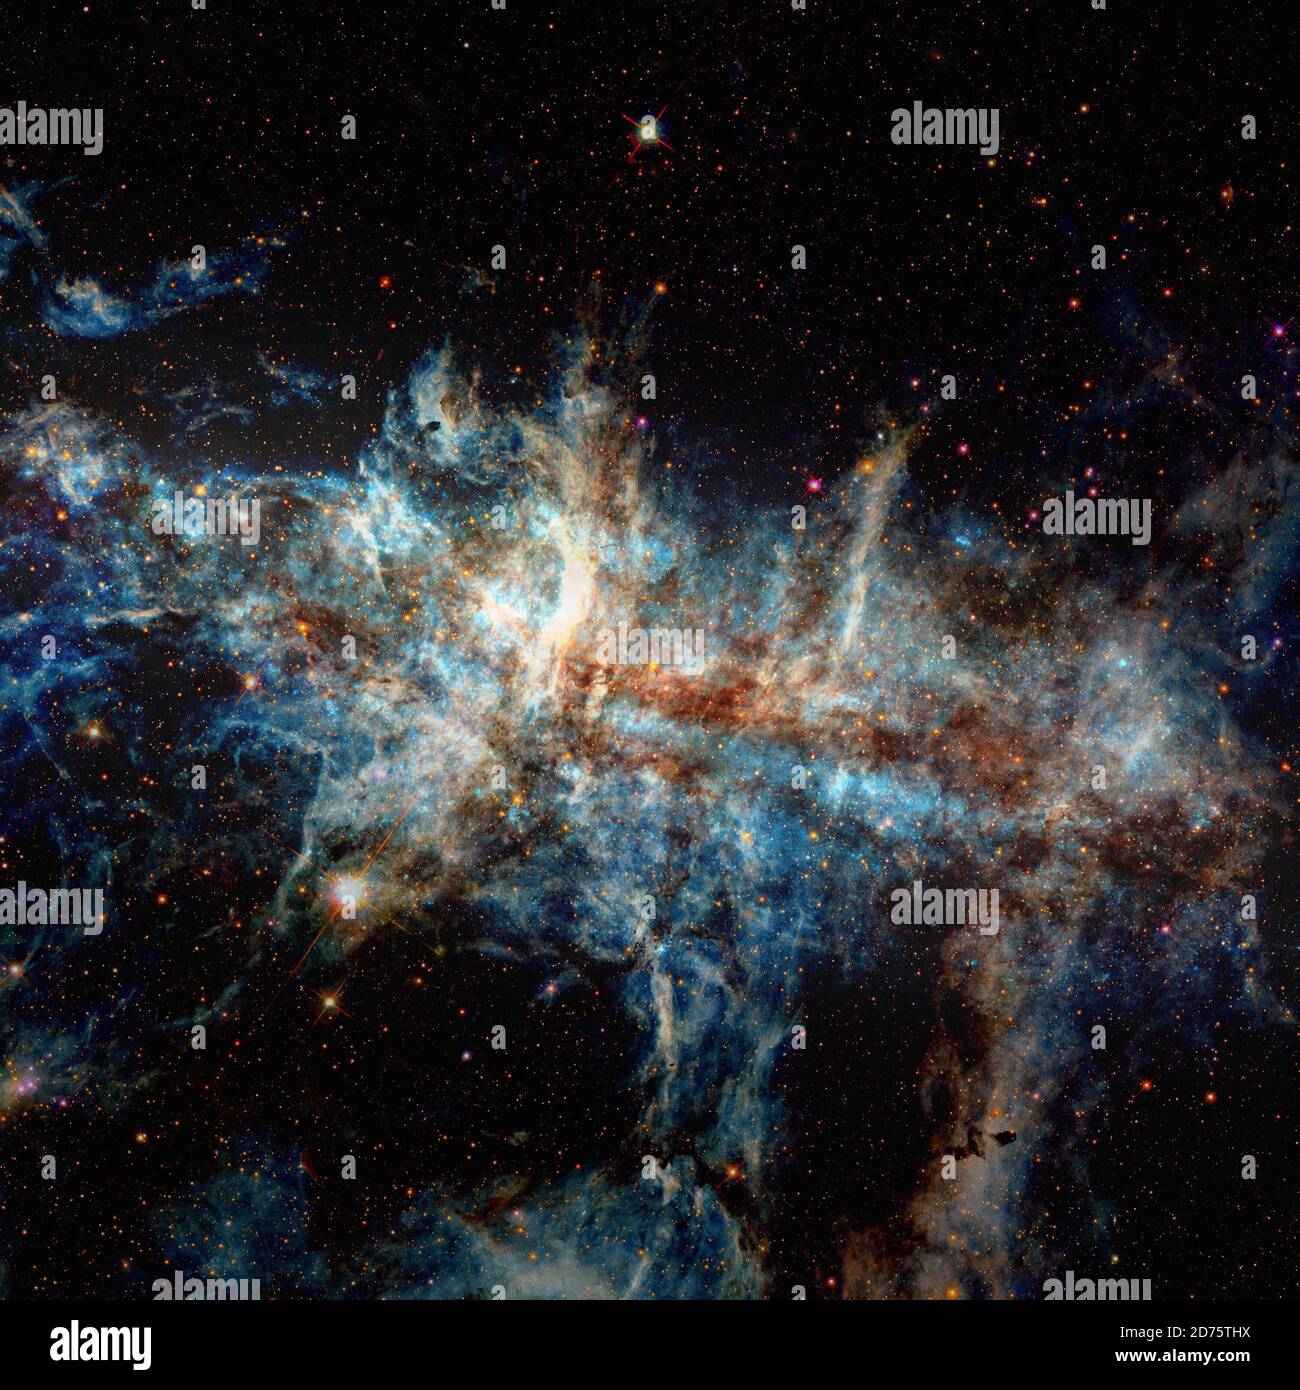 Galaxiensterne. Elemente dieses Bildes, die von der NASA eingerichtet wurden. Stockfoto